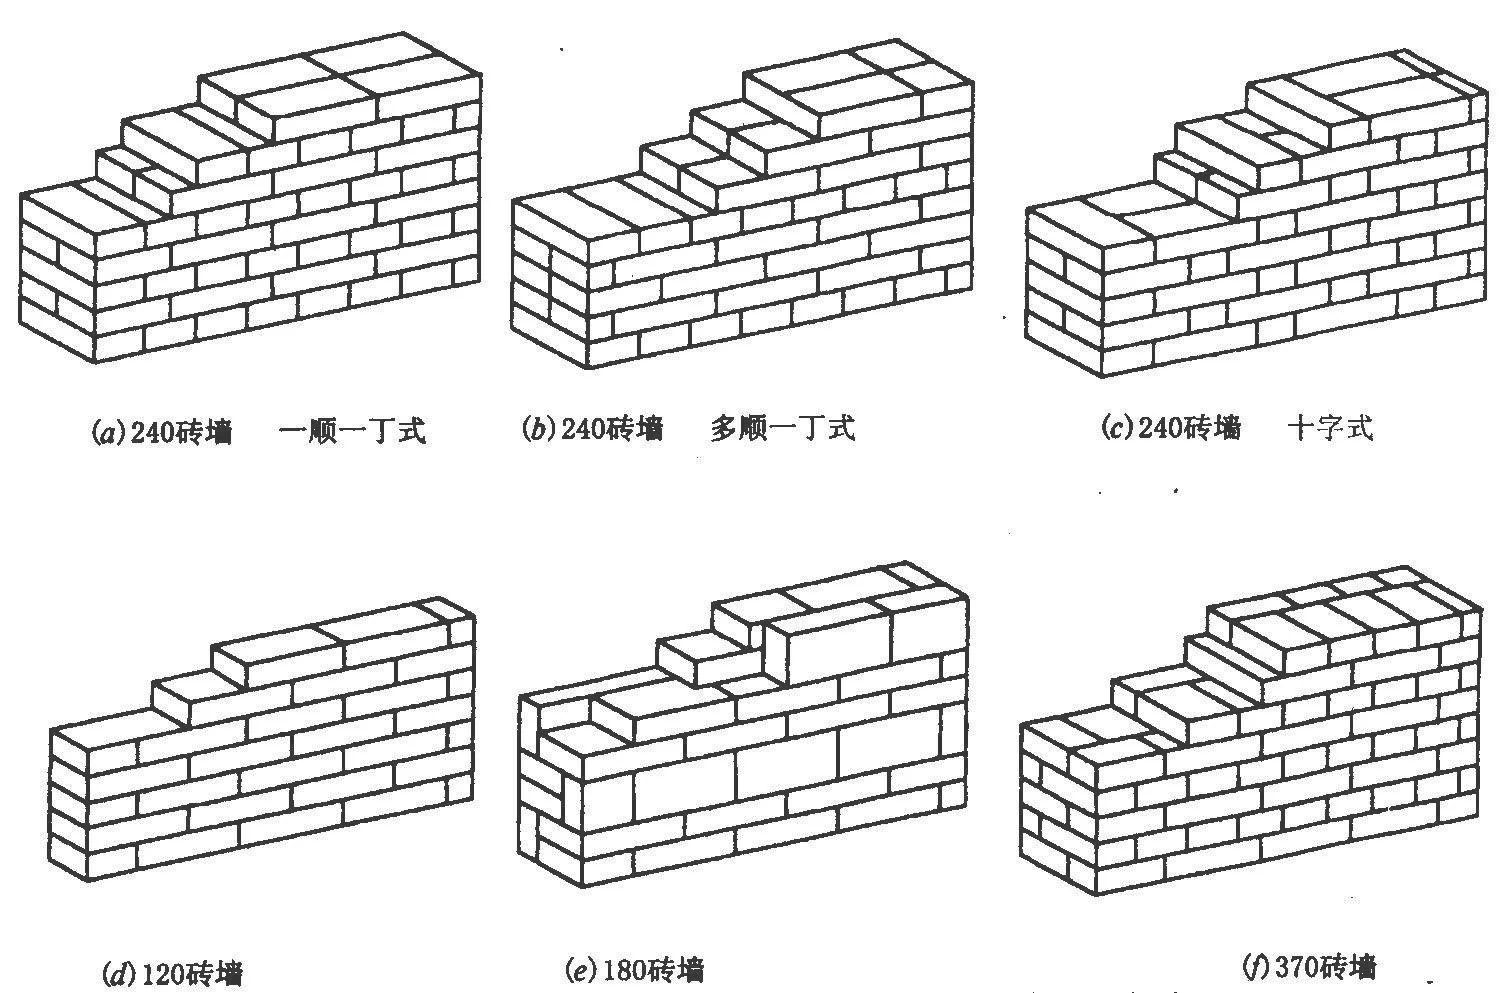 24砖墙一平方米用多少砖